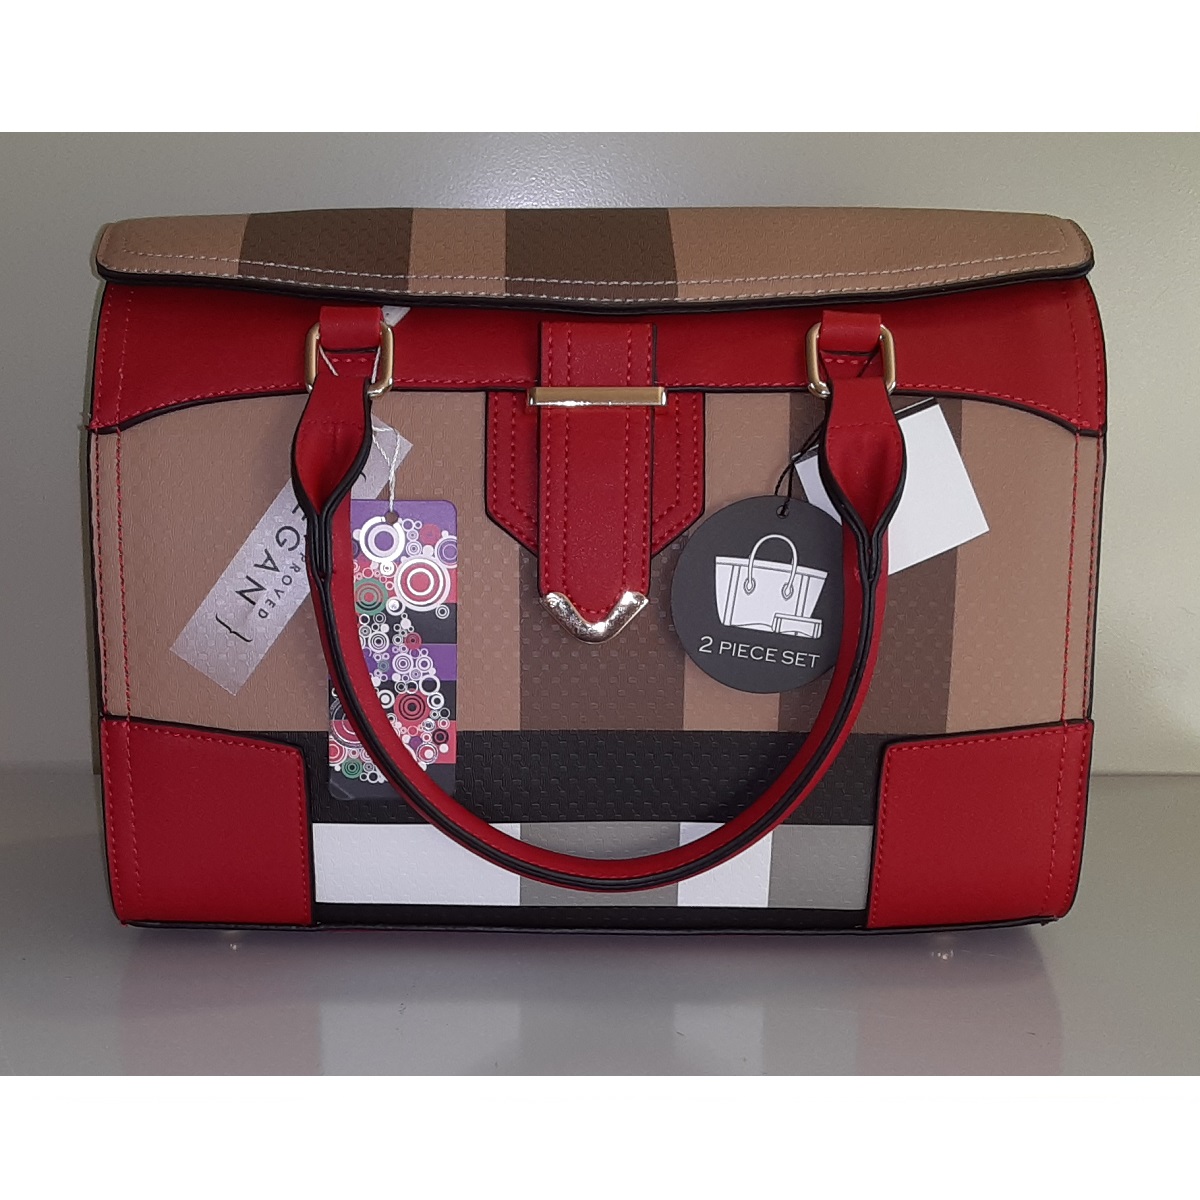 Red & Brown Handbag - 2-Piece Set Vegan Leather handbag with smaller companion bag